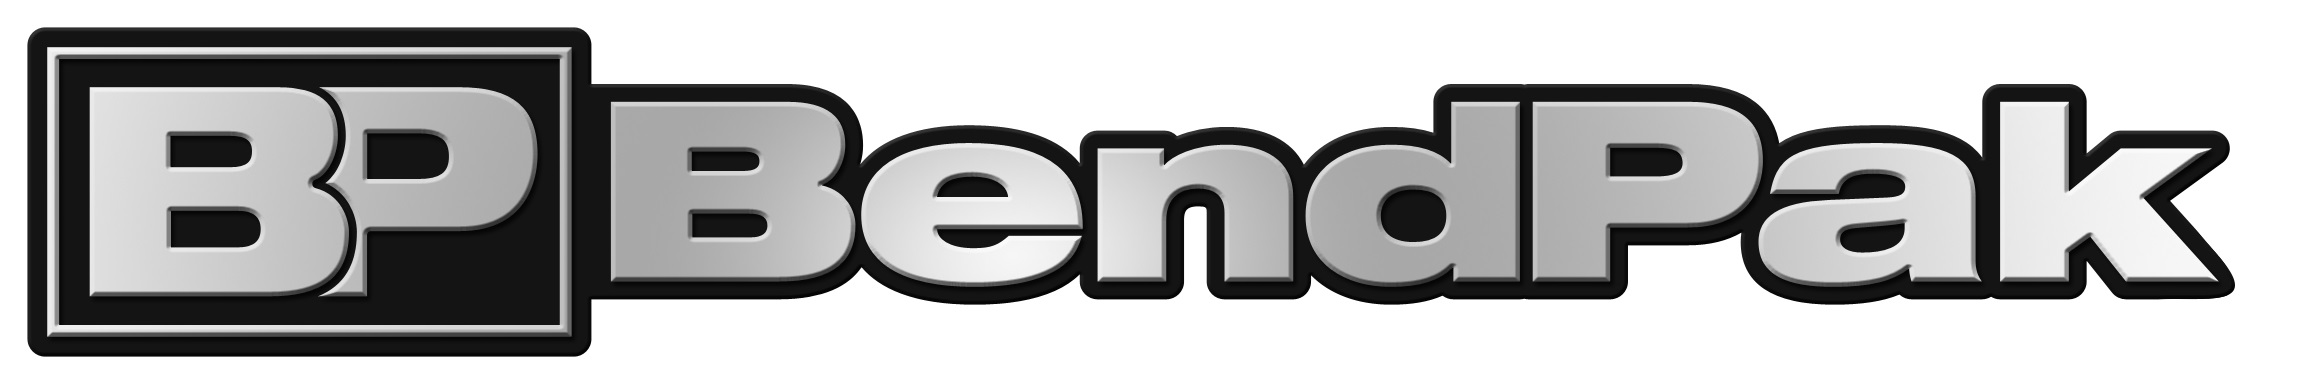 bendpak-logo-chrome.jpg